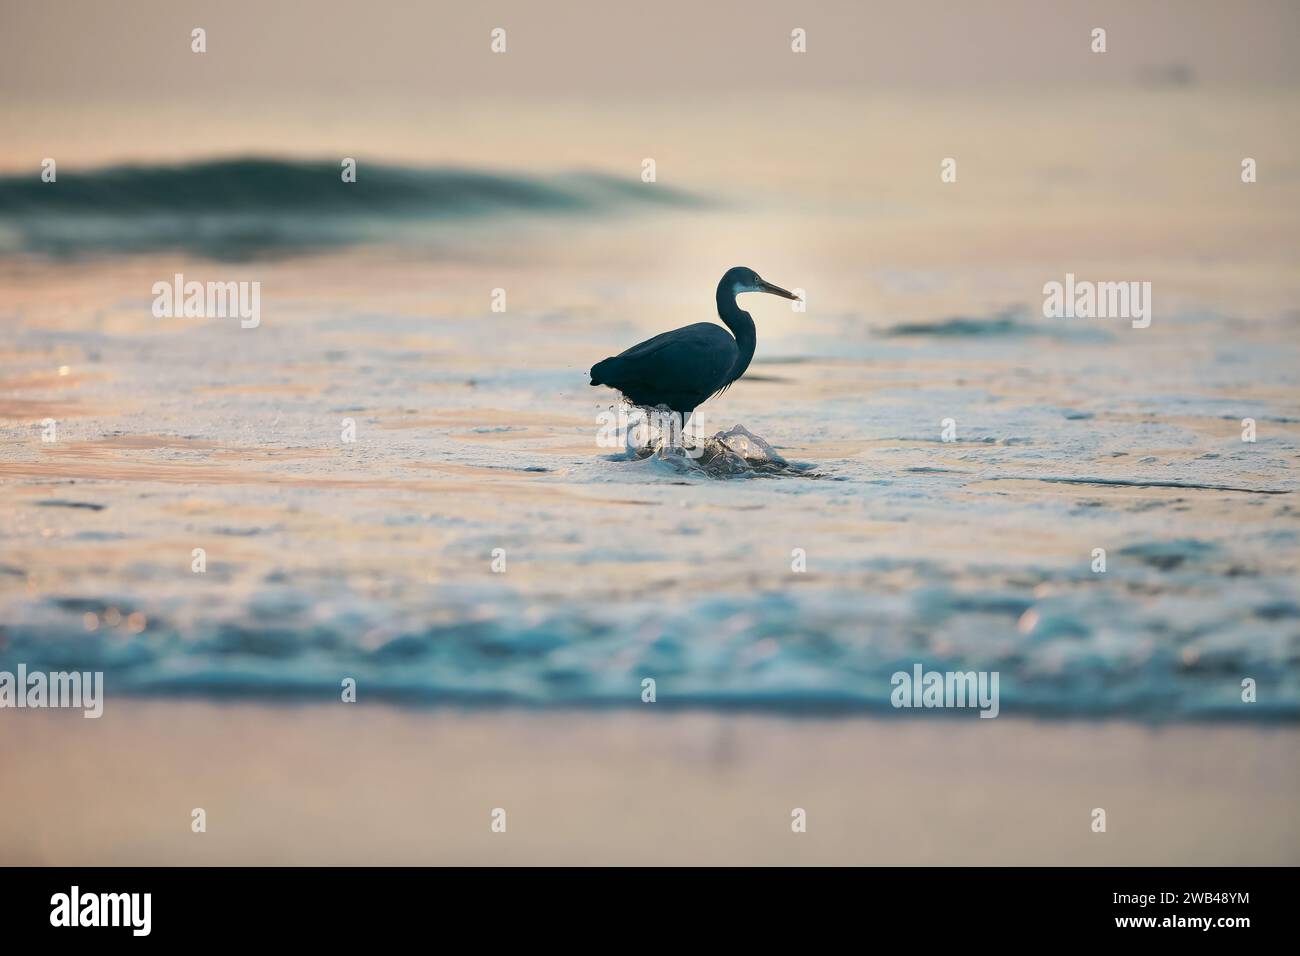 Un oiseau aventureux pataugera dans les eaux turquoises tranquilles d'une plage, explorant ses environs Banque D'Images